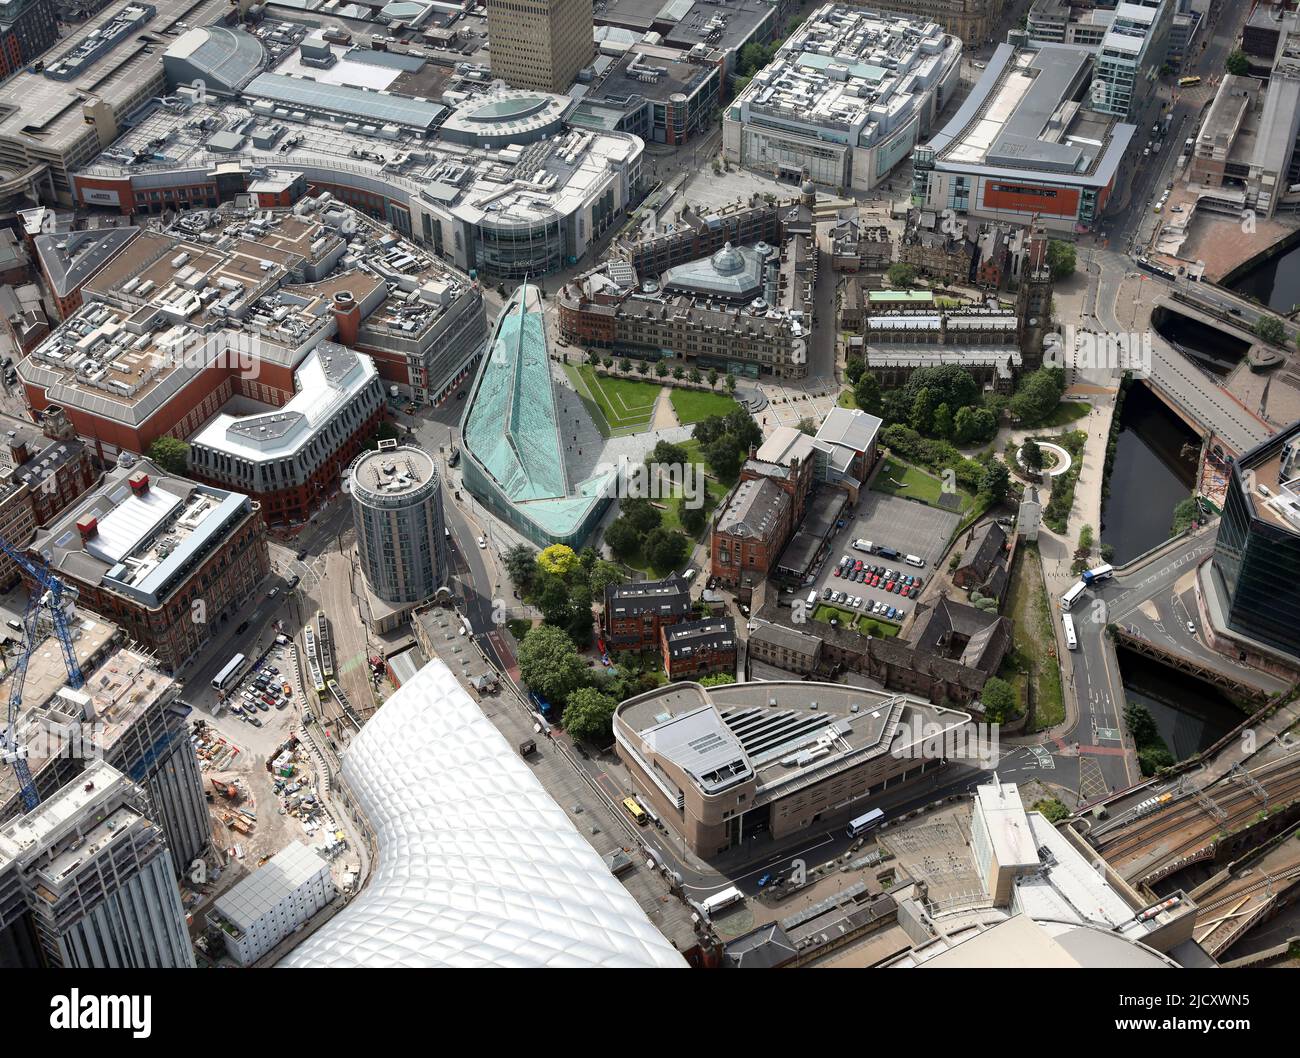 Vista aérea del centro de la ciudad de Manchester: Los Jardines de la Catedral, el Museo Nacional de Fútbol (verde), la Catedral de Manchester y el parque conmemorativo Glade of Light Foto de stock